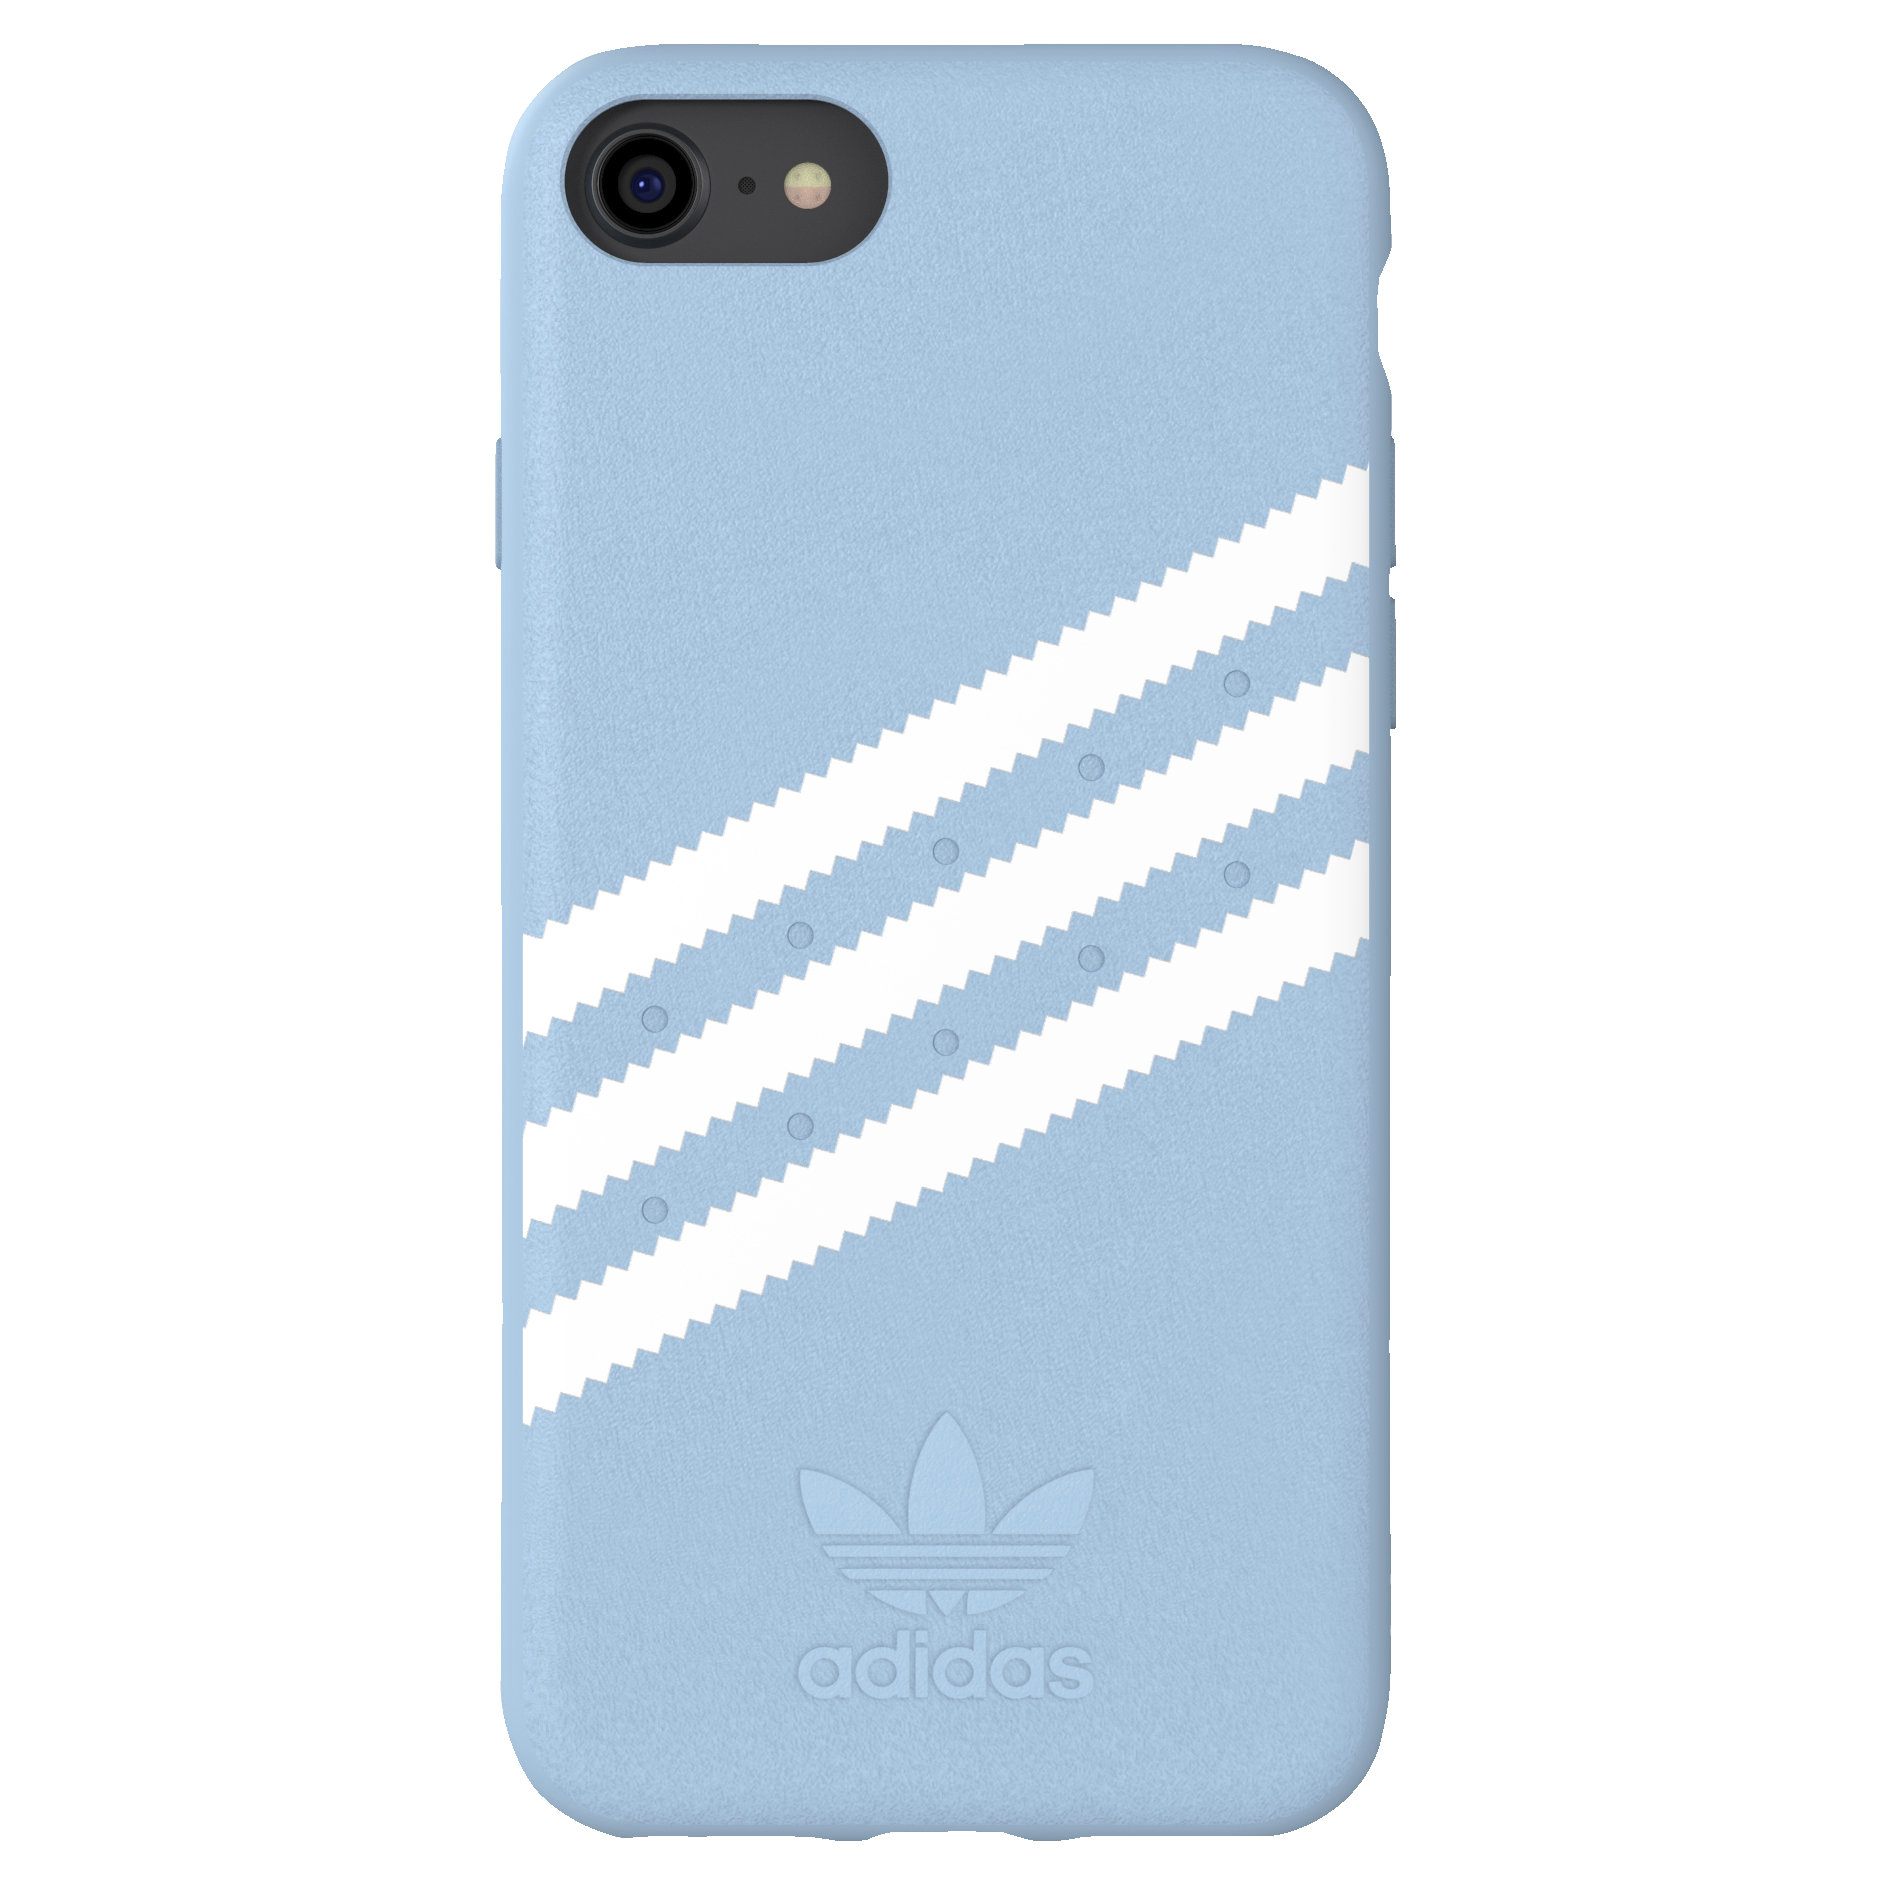 Adidas deksel iPhone 6/6s/7/8 (blå) - Deksler og etui til mobiltelefon -  Elkjøp